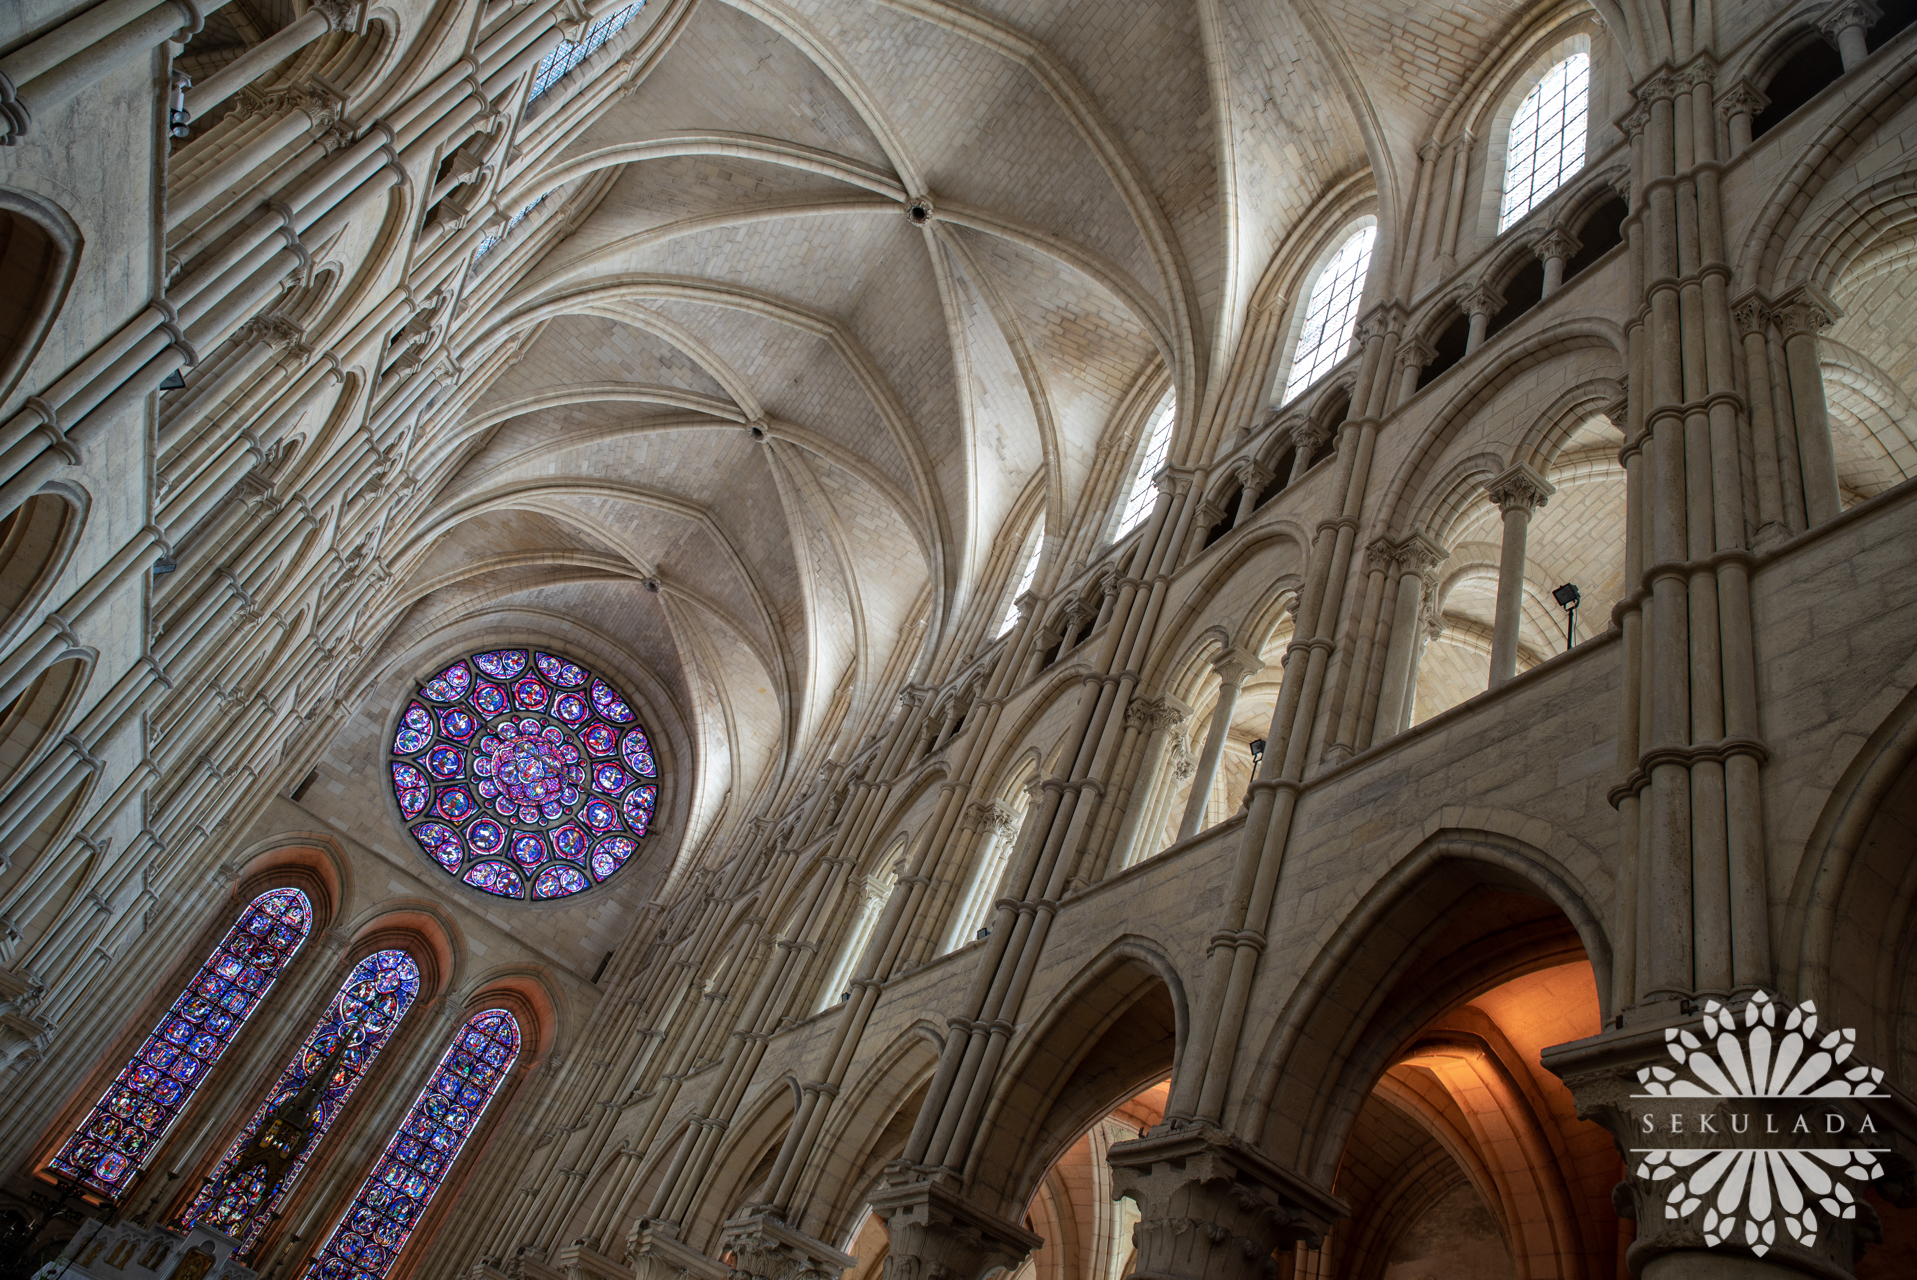 Sklepienie nawy głównej katedry Najświętszej Maryi Panny w Laon (fr. Cathédrale Notre-Dame de Laon); Hauts-de-France, Francja.